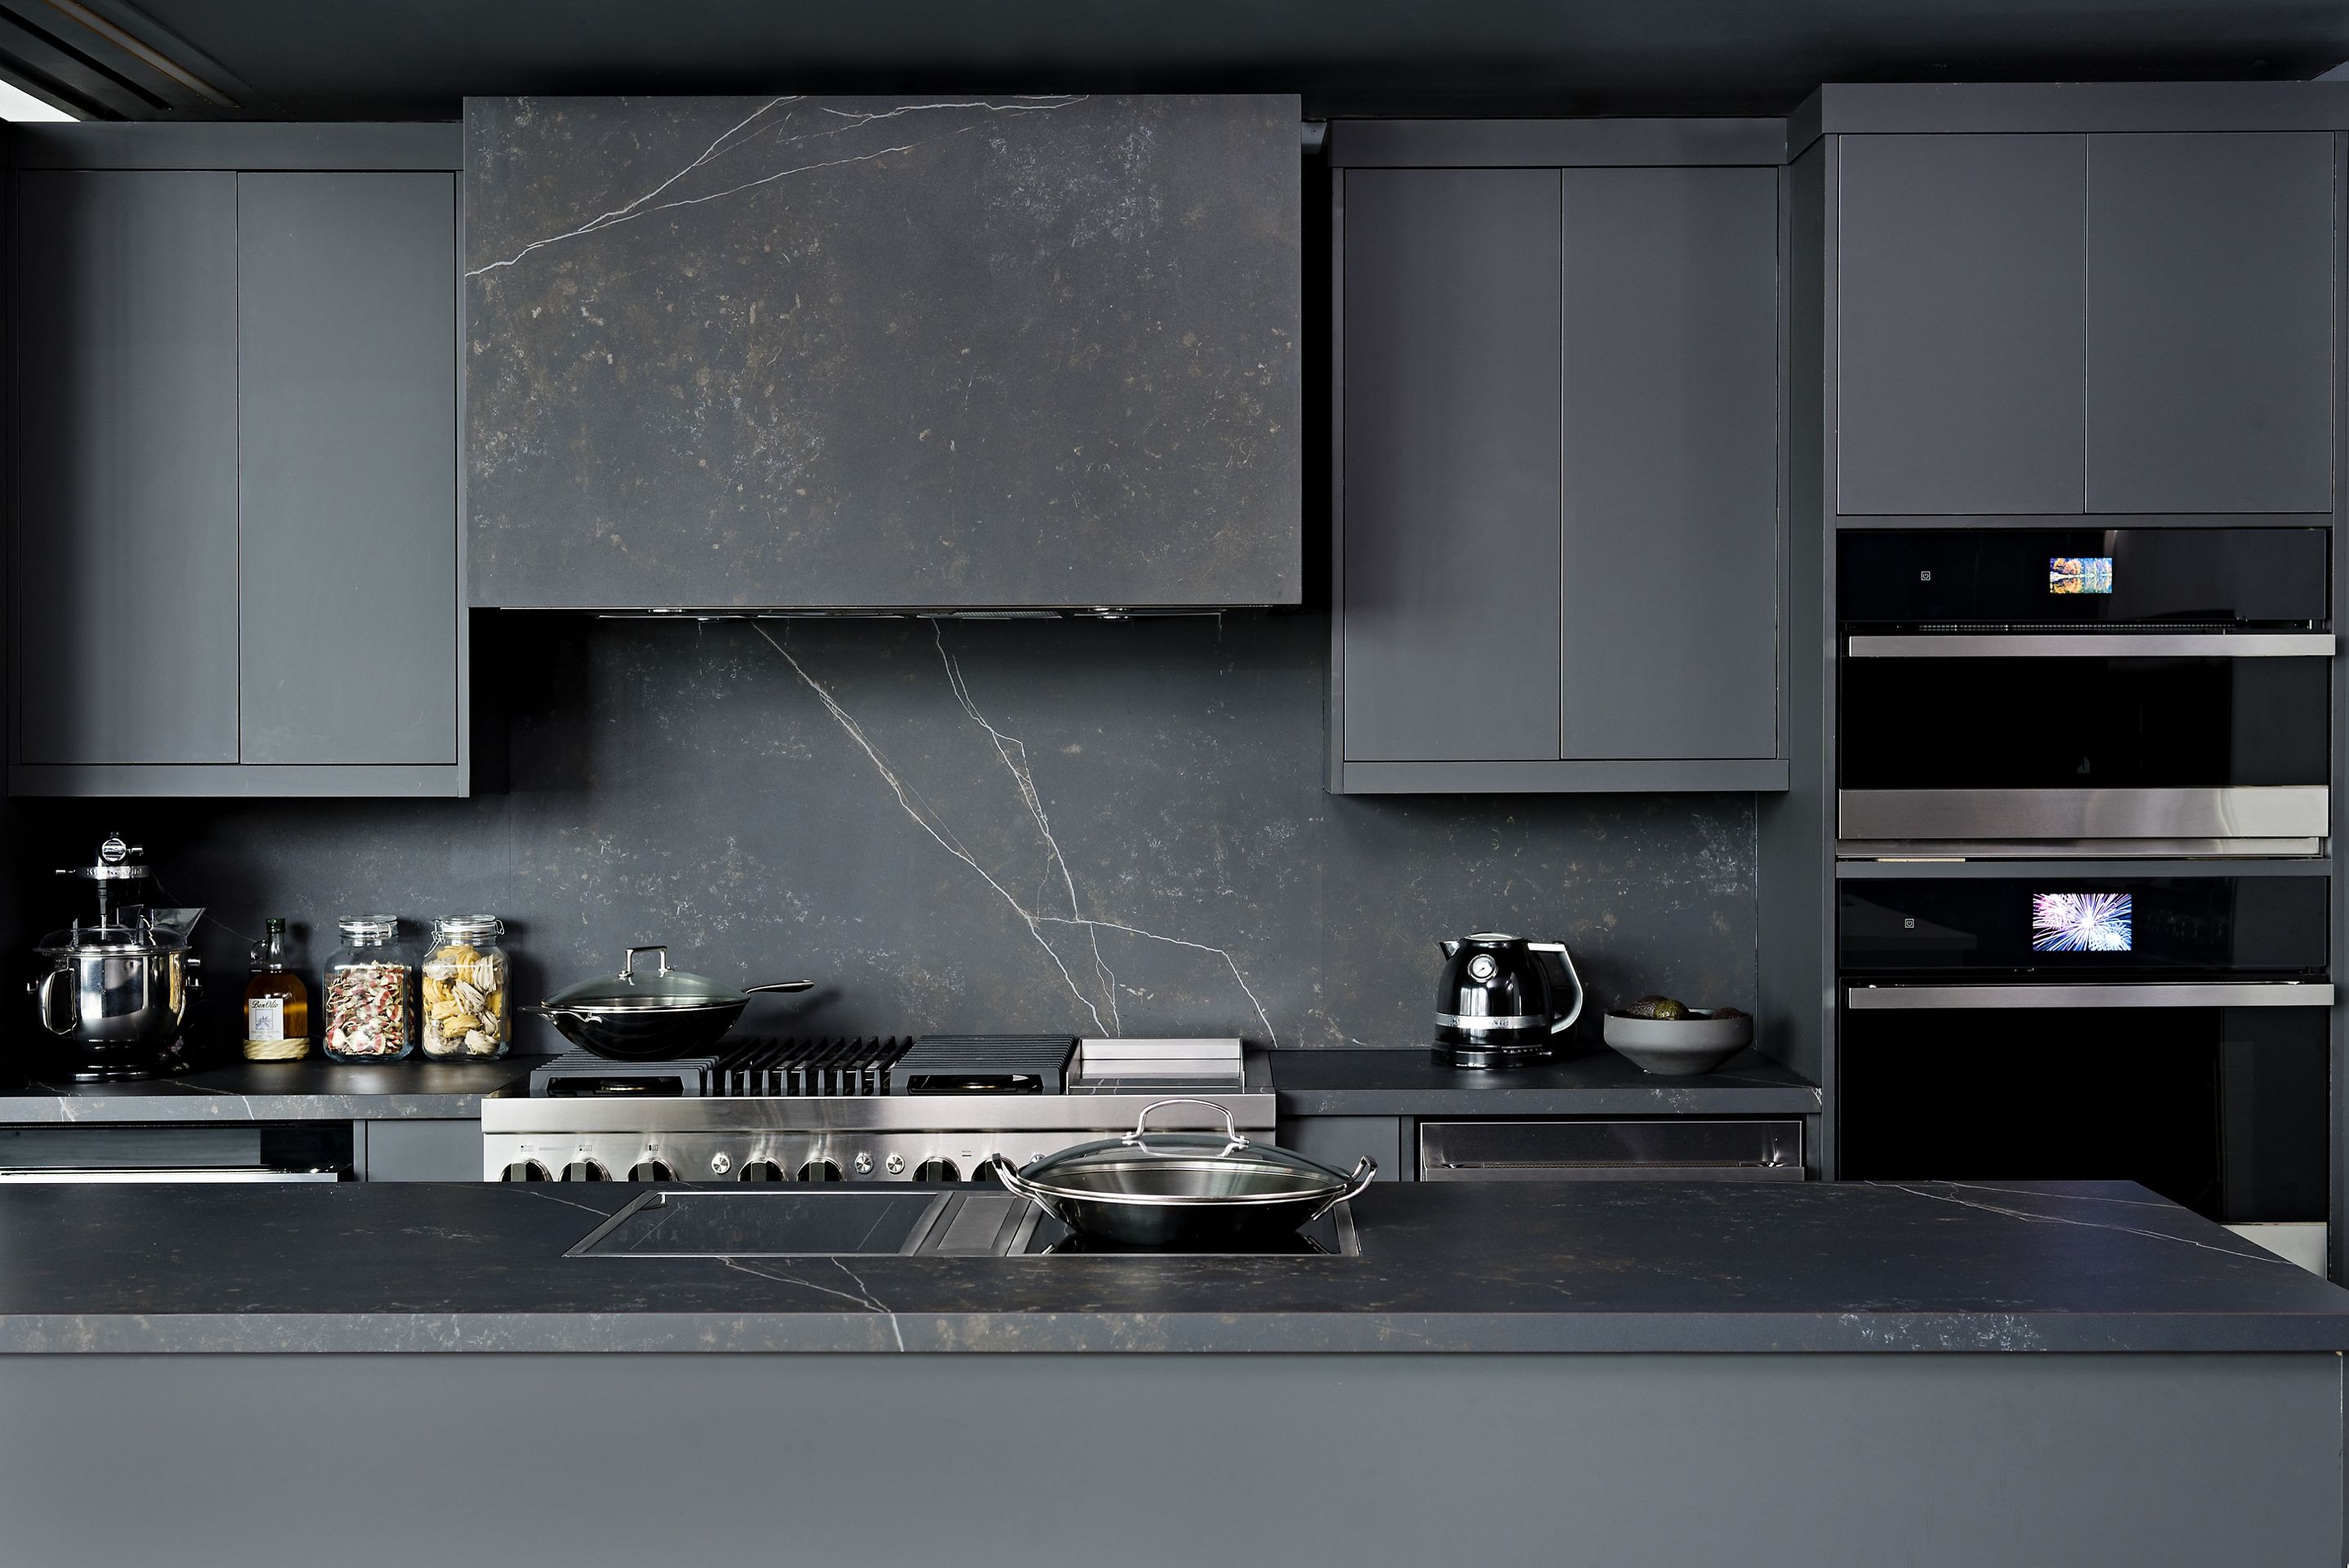 A luxury kitchen featuring JennAir appliances